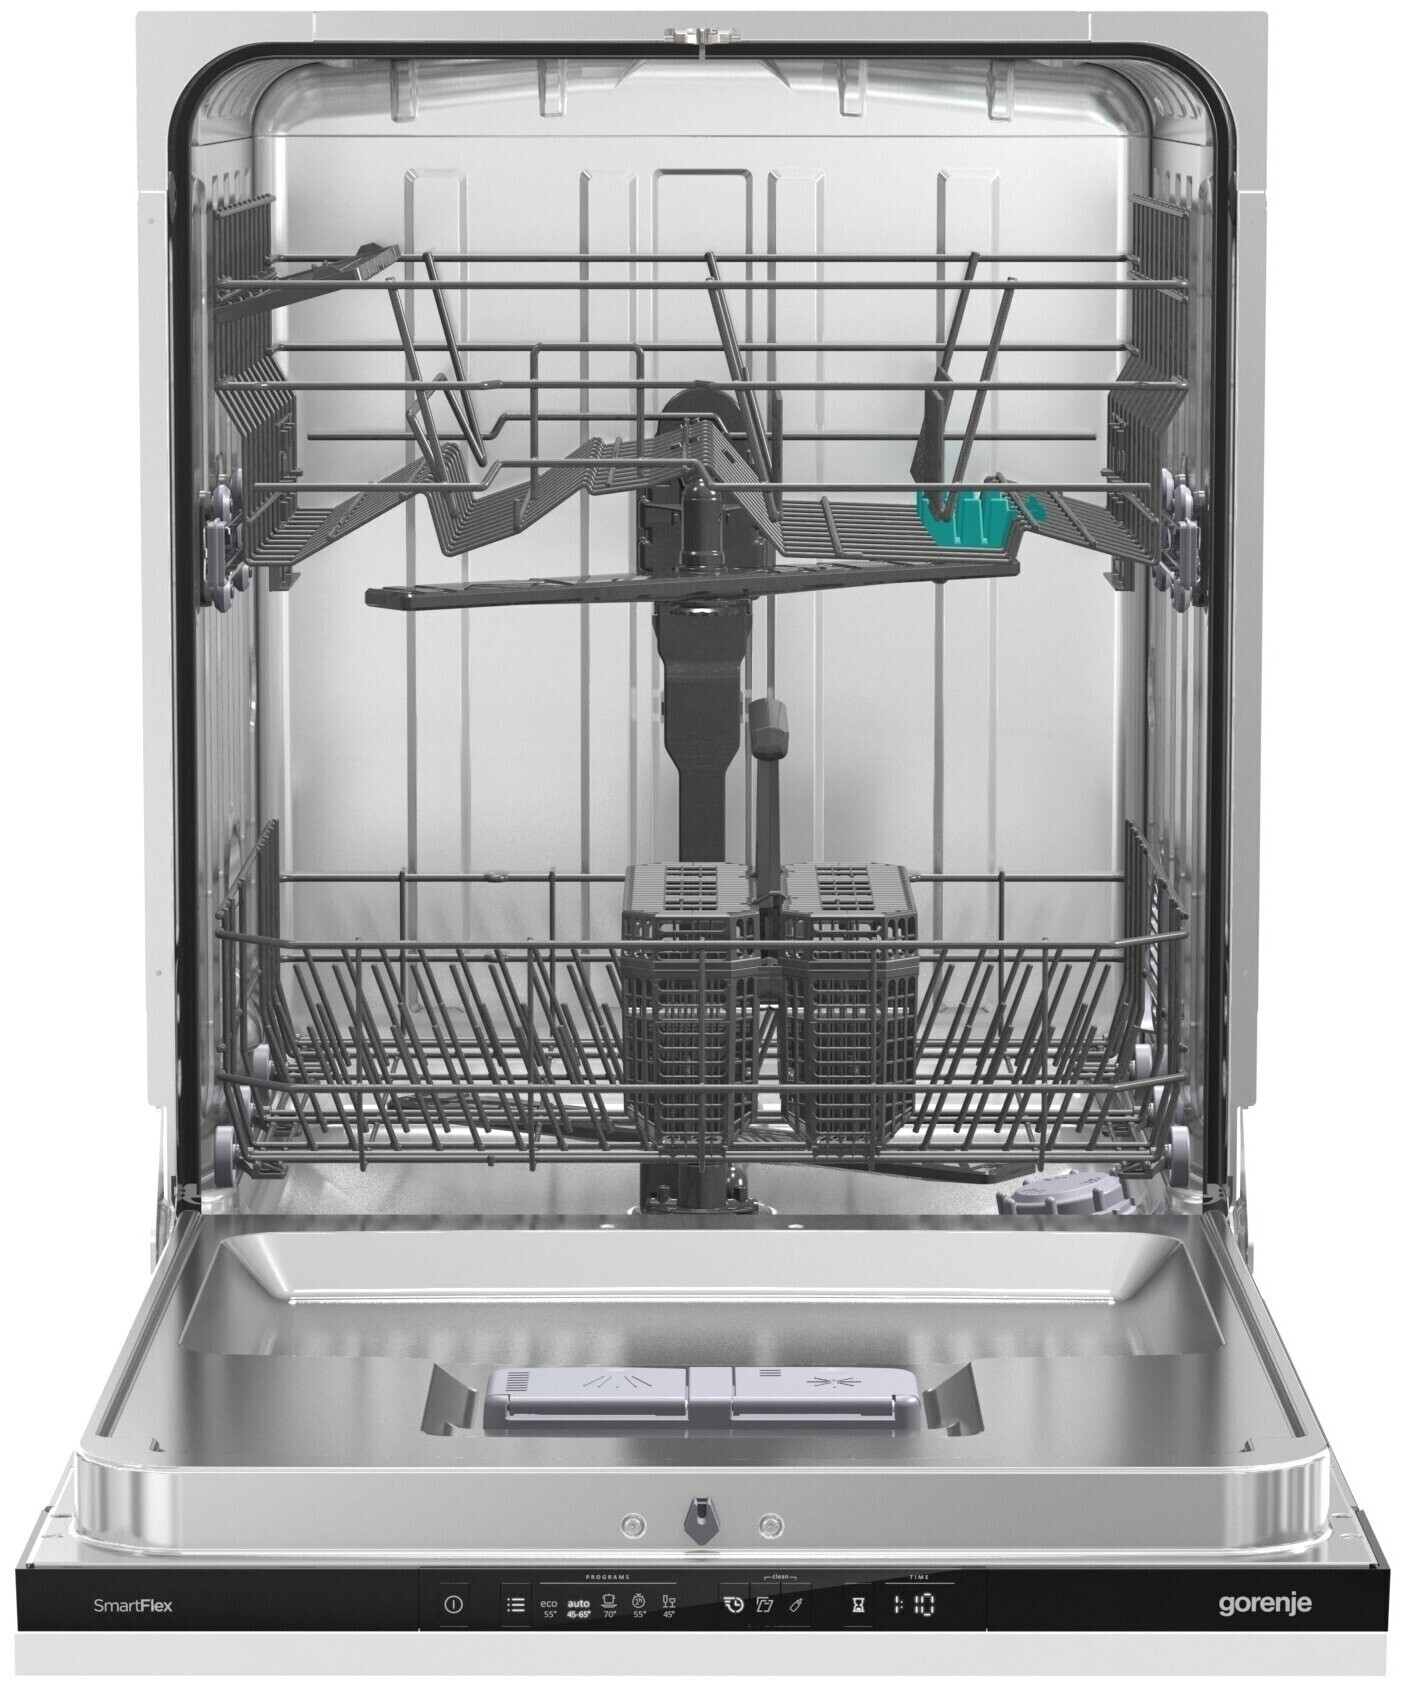 Посудомоечная машина gorenje gv663c61. Посудомоечная машина Gorenje gv671c60. Встраиваемая посудомоечная машина Gorenje gv631d60. Посудомоечная машина Gorenje gv672c62. Gorenje gv661d60.